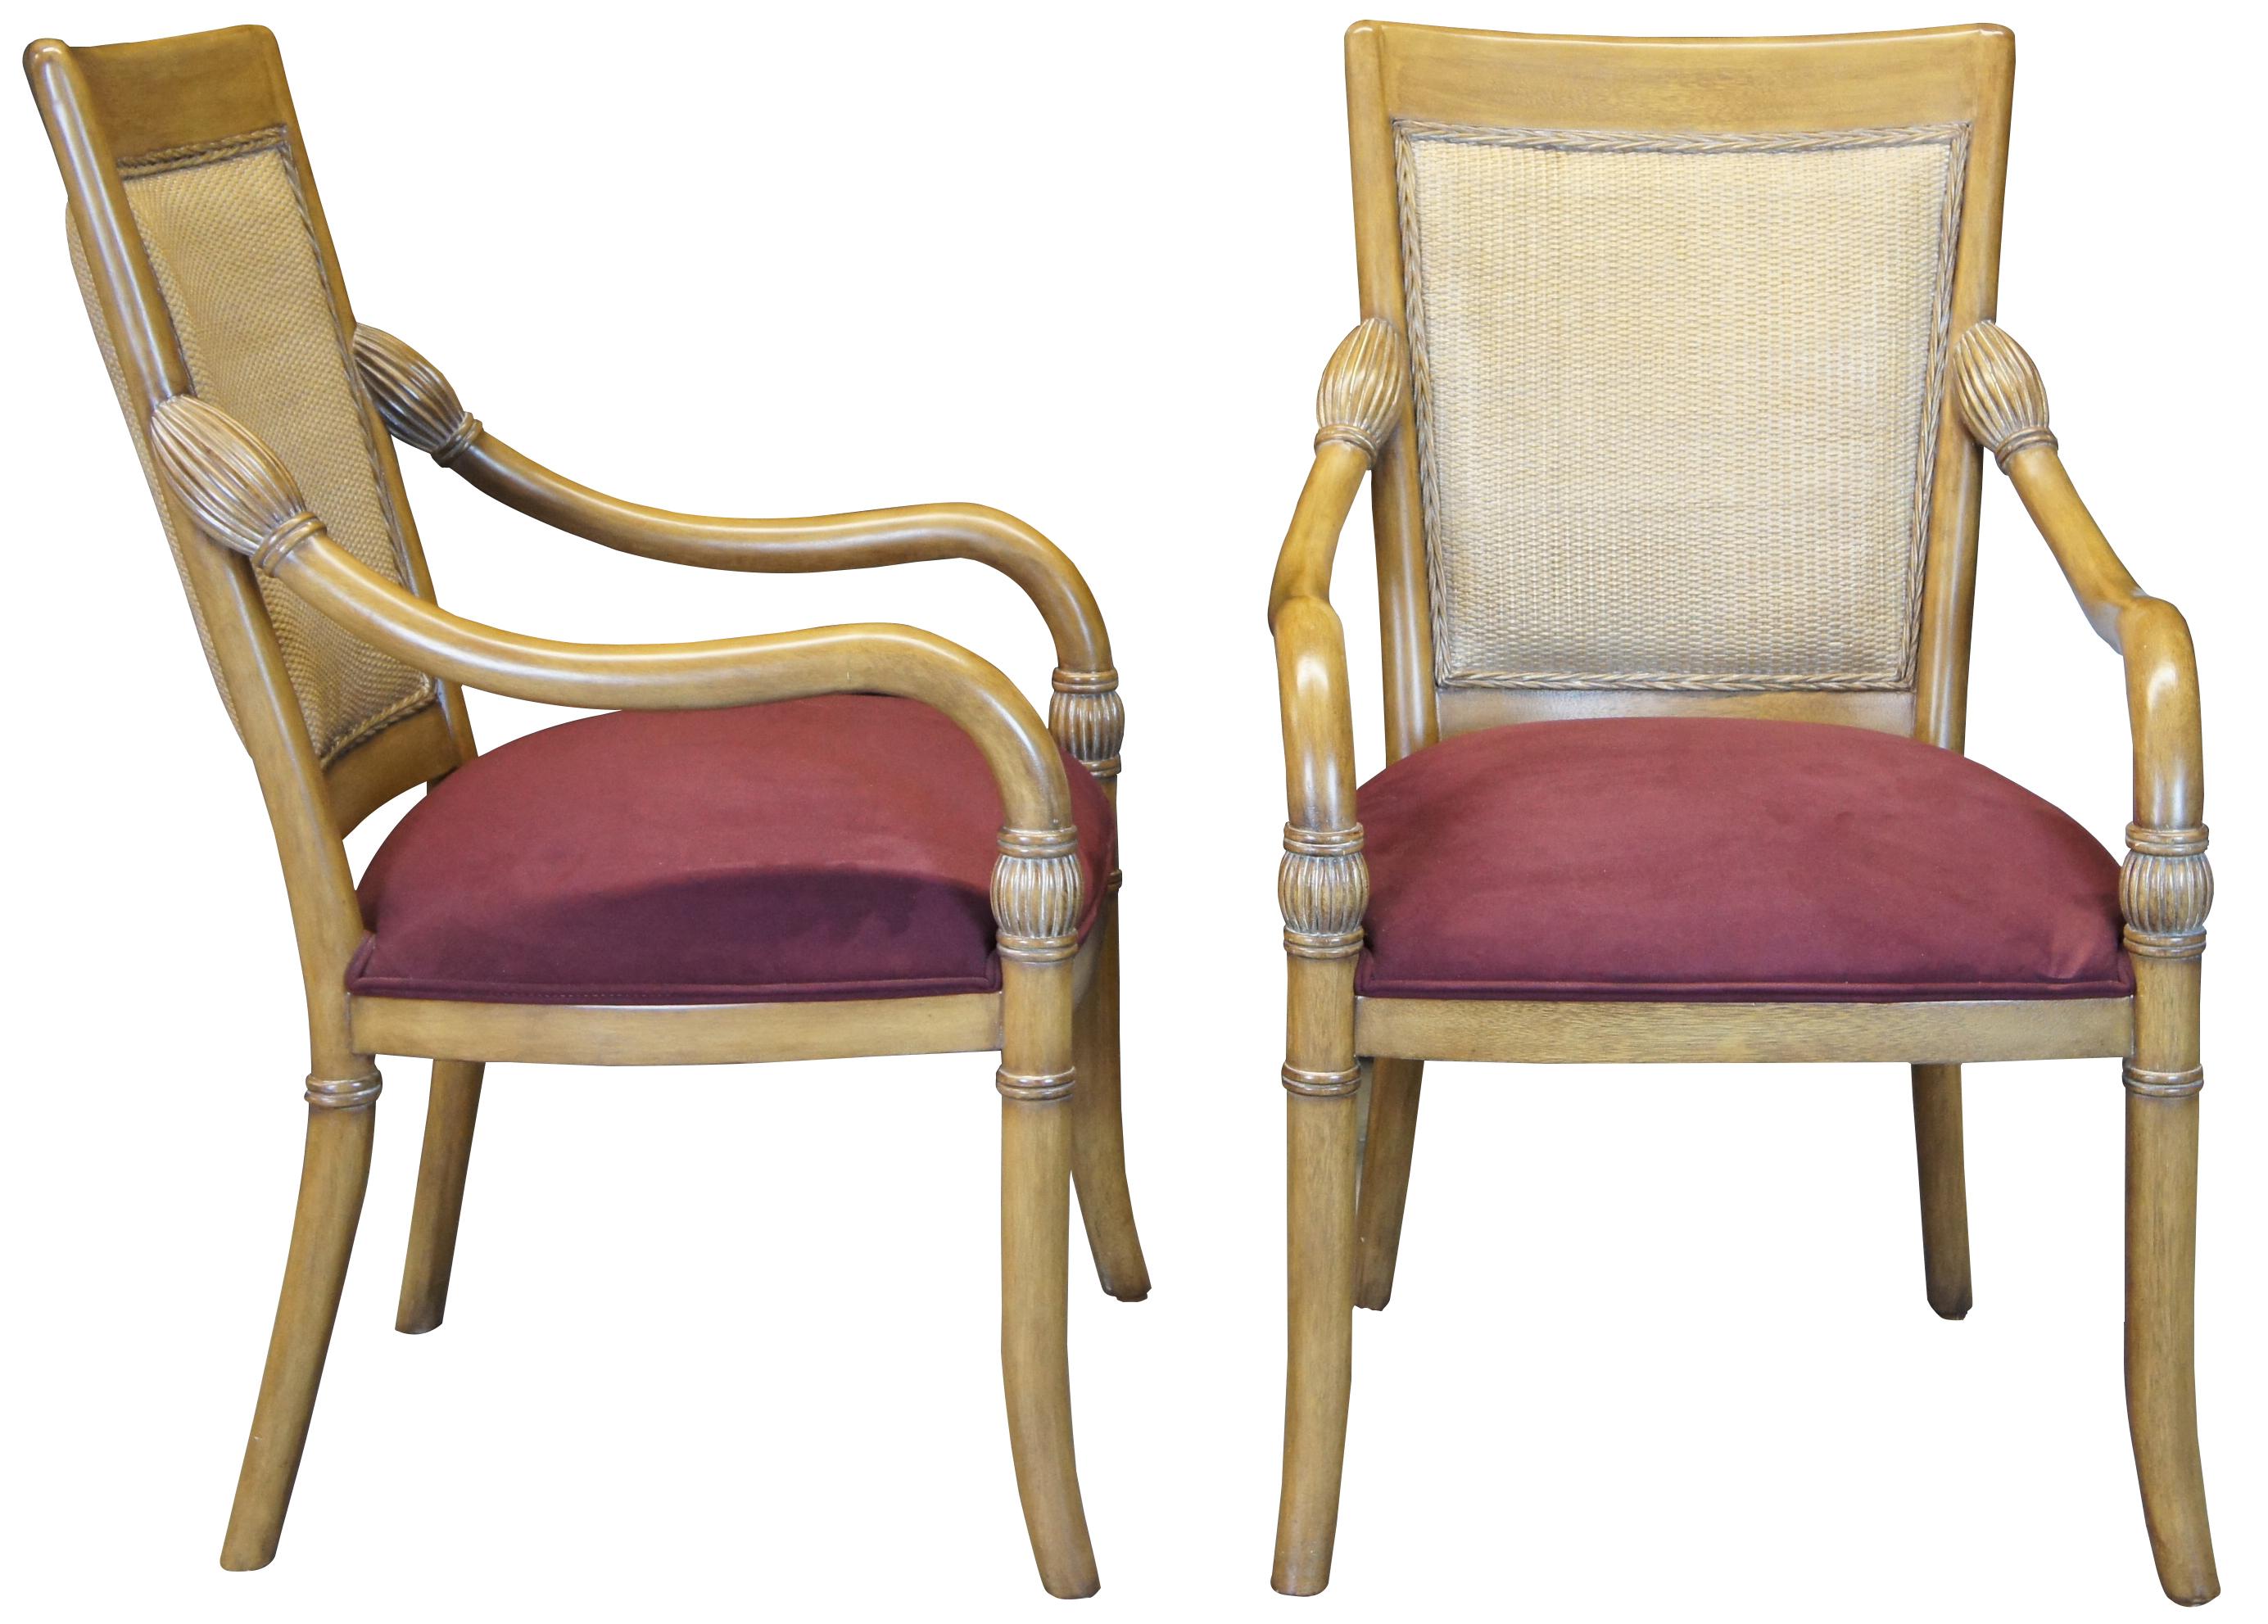 Ein schönes Paar Kreiss Luxury Empire-Sessel. Gefertigt aus Mahagoni, mit einer Rückenlehne aus Weidengeflecht und geschwungenen Armen mit bauchigen, kannelierten Drehungen. Gepolstert mit kastanienbraunem Ultrasuede.
 